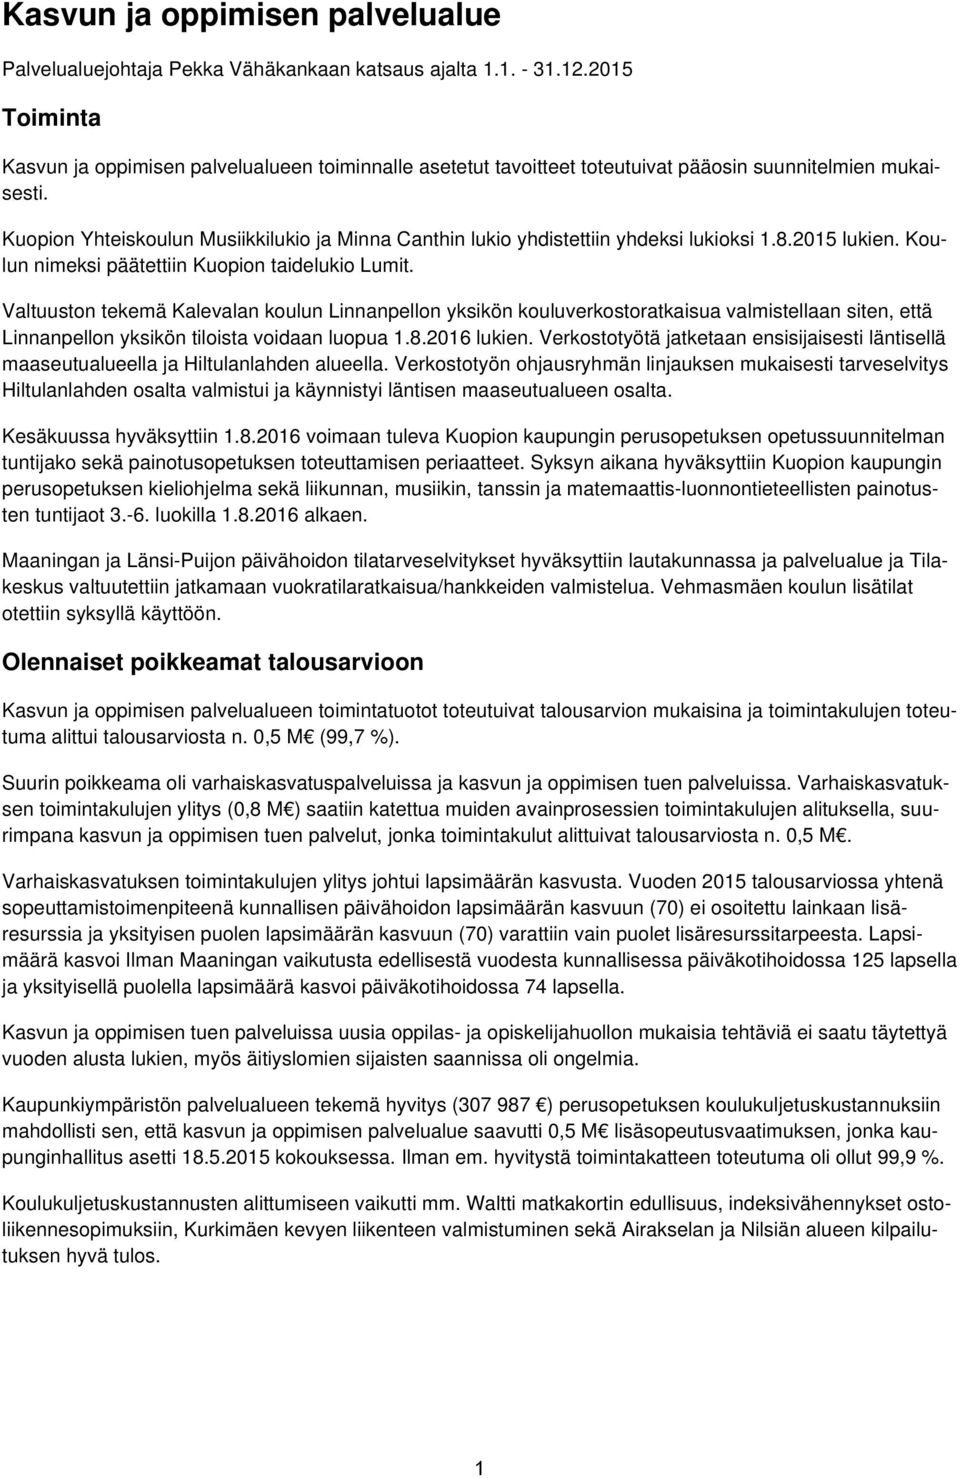 Kuopion Yhteiskoulun Musiikkilukio ja Minna Canthin lukio yhdistettiin yhdeksi lukioksi 1.8.2015 lukien. Koulun nimeksi päätettiin Kuopion taidelukio Lumit.